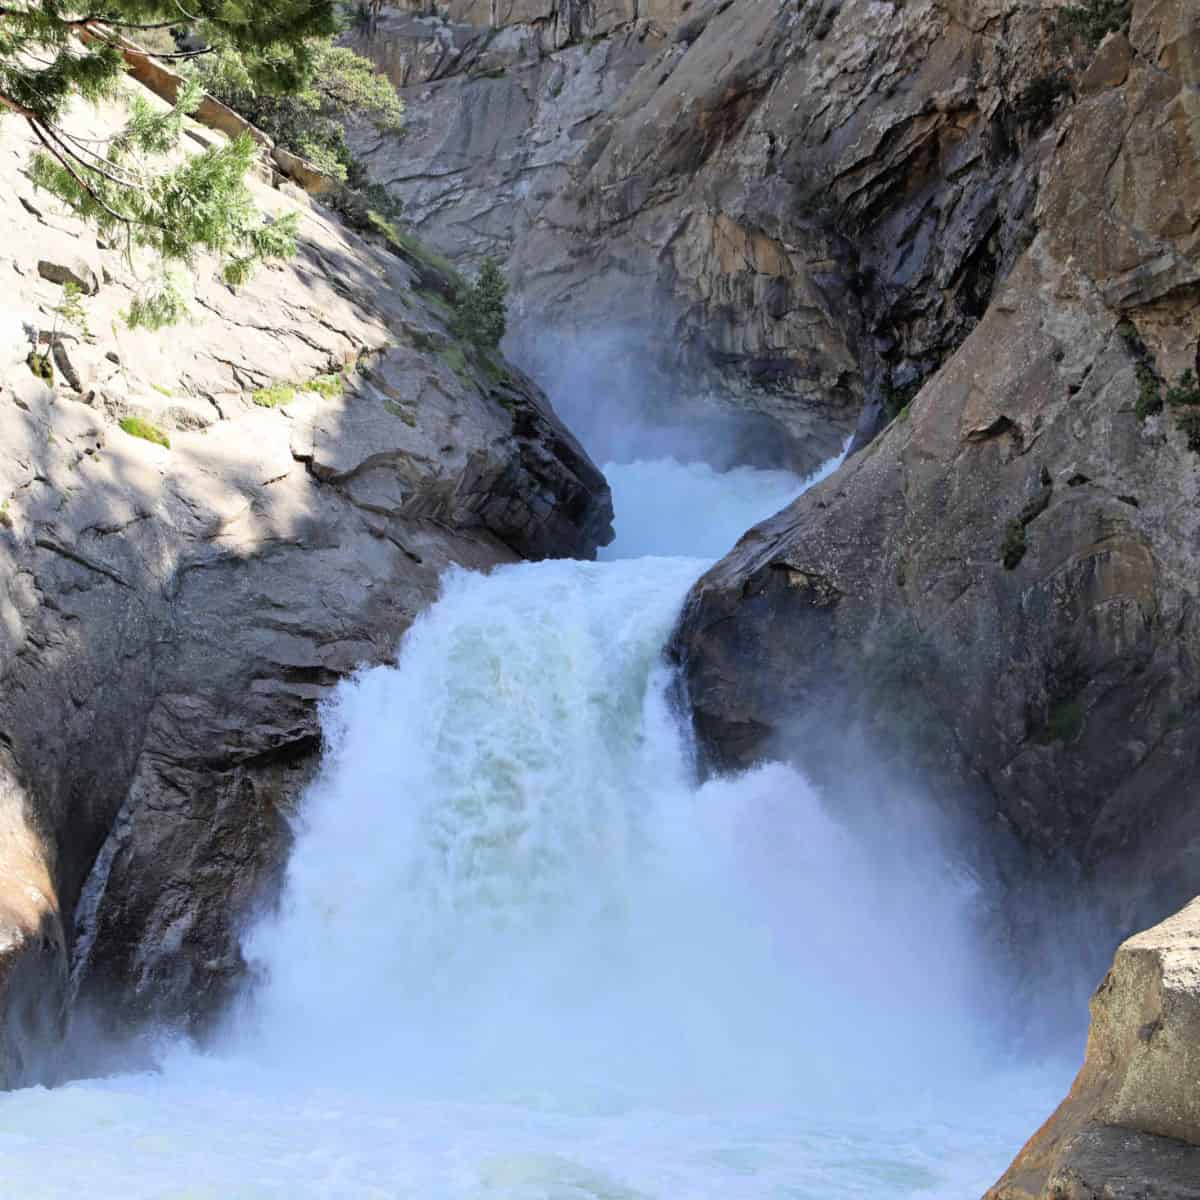 Roaring River Falls at Kings Canyon National Park California